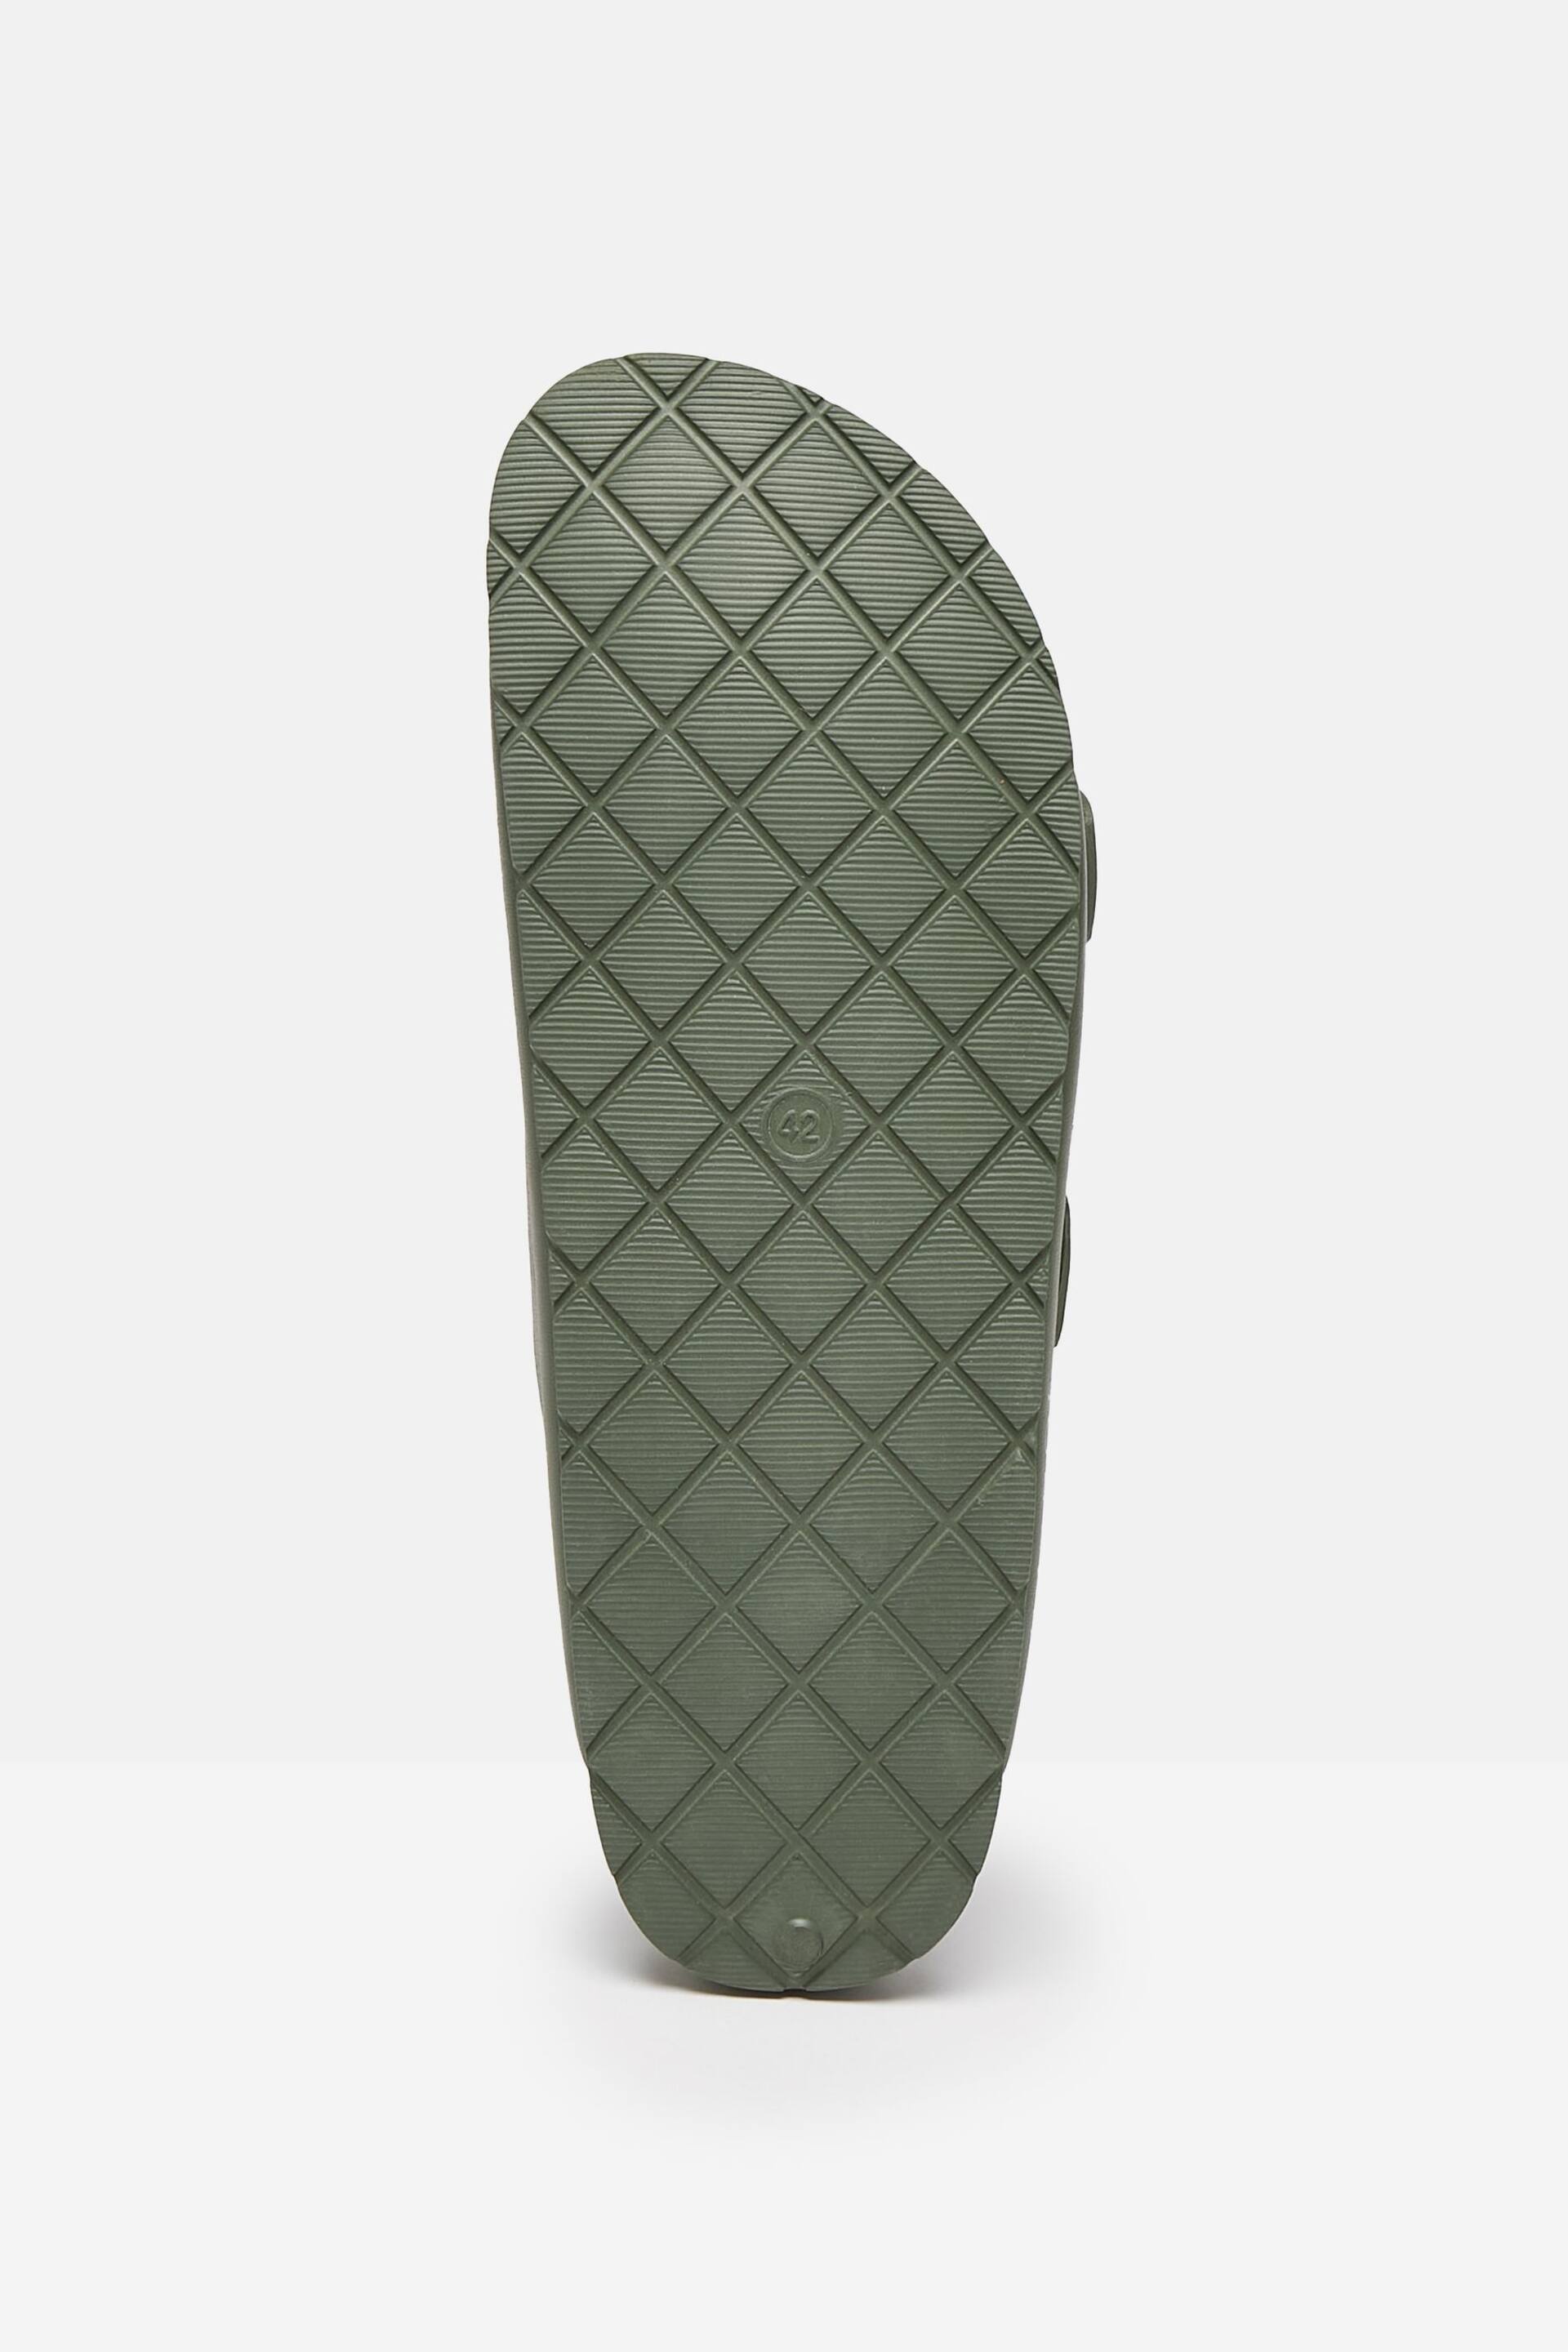 Joules Sunseeker Khaki Green EVA Rubber Sliders - Image 5 of 5